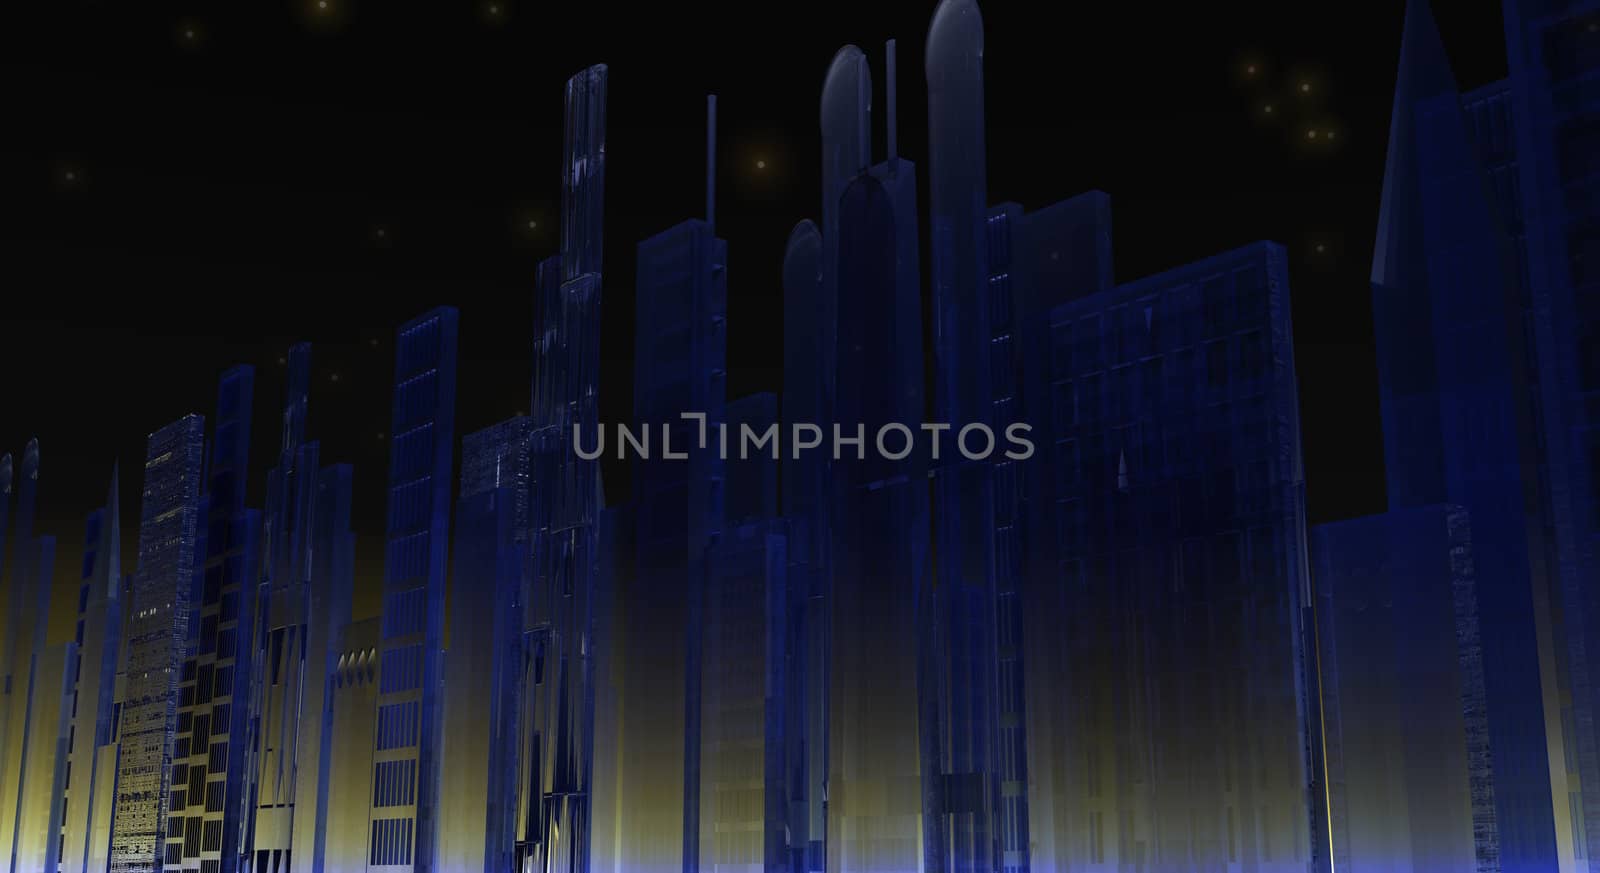 Cityscape Illustration by jasony00